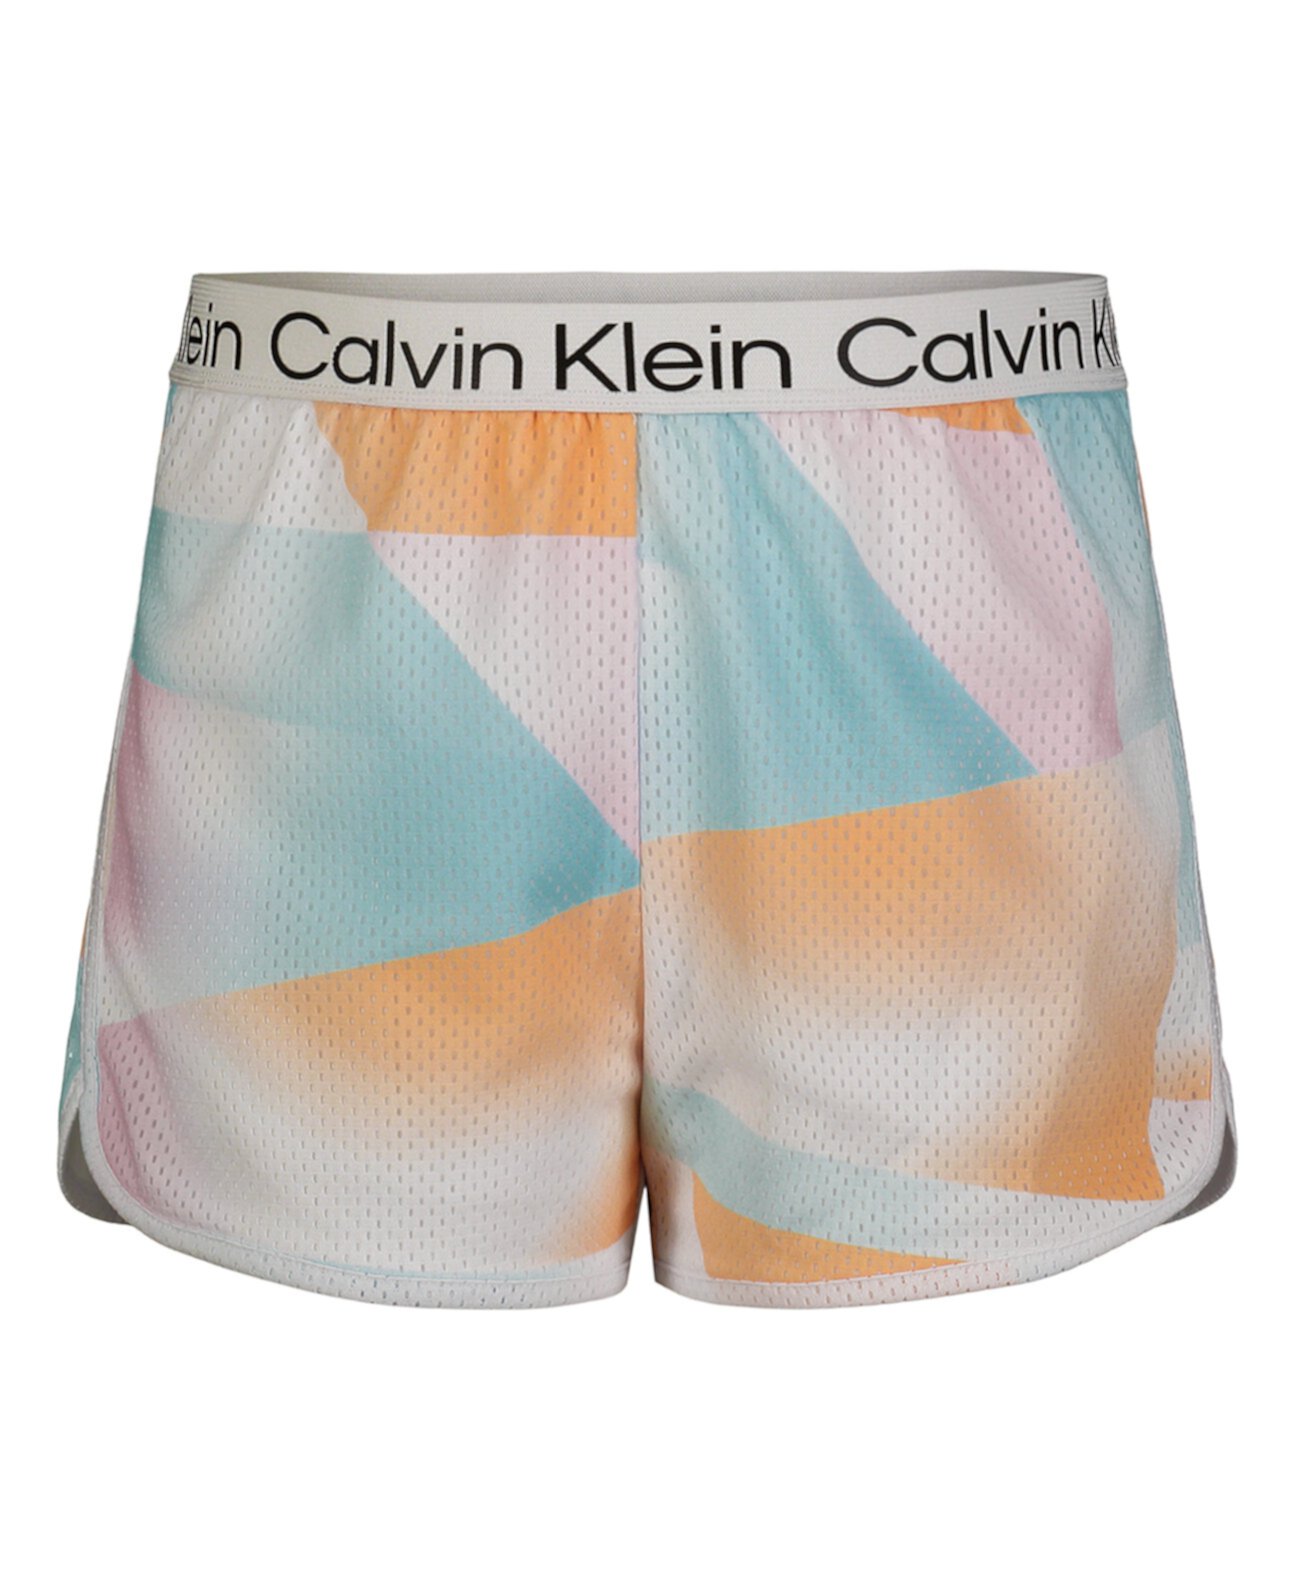 Многослойные сетчатые шорты для больших девочек Calvin Klein